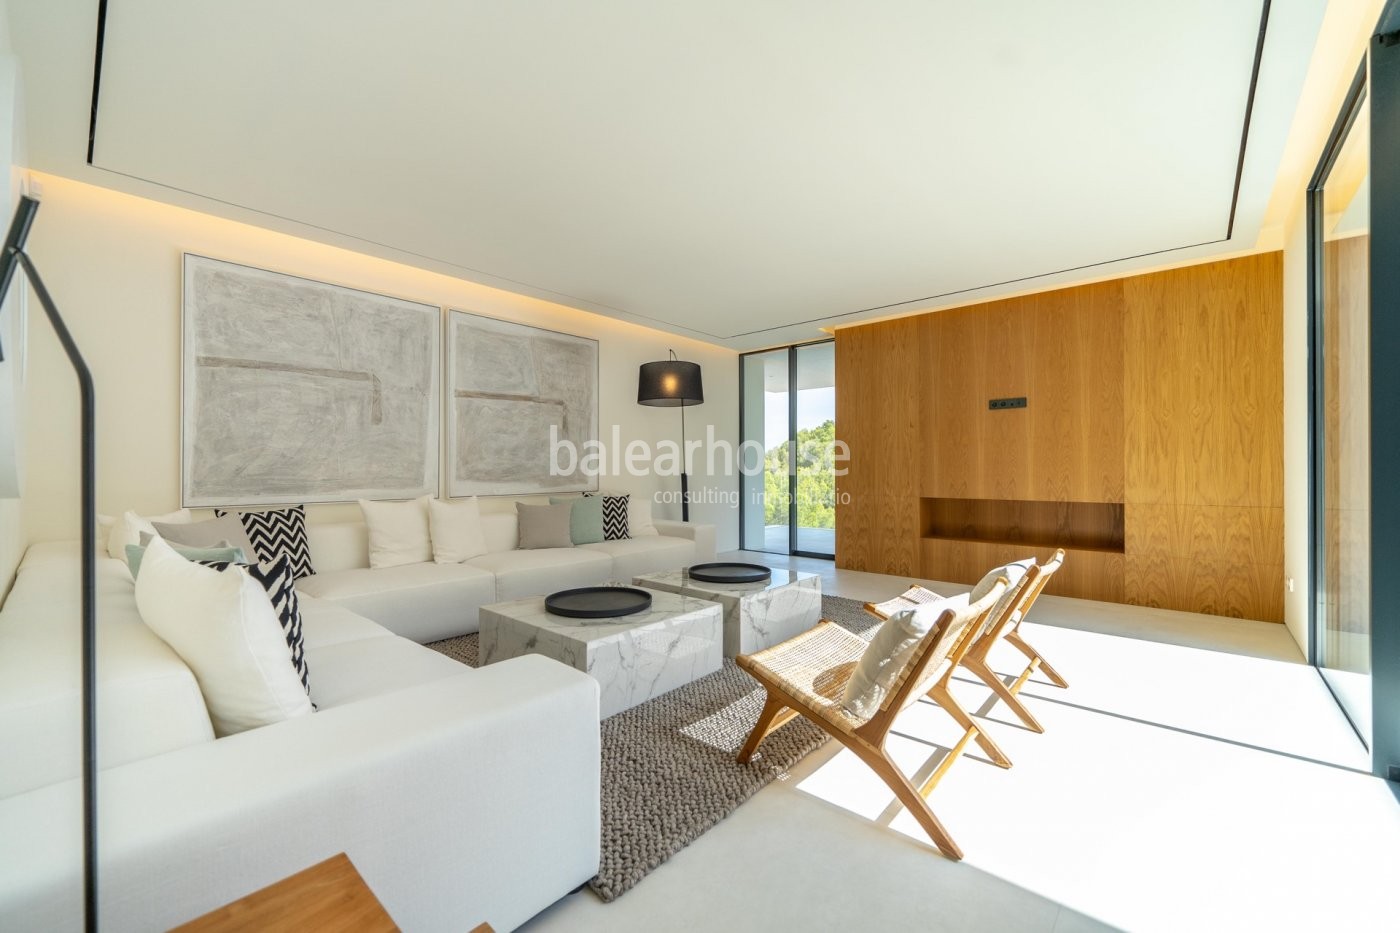 Neue und zeitgemäße Villa in Neubau, die maximales Wohlbefinden an der Costa d'en Blanes bietet.